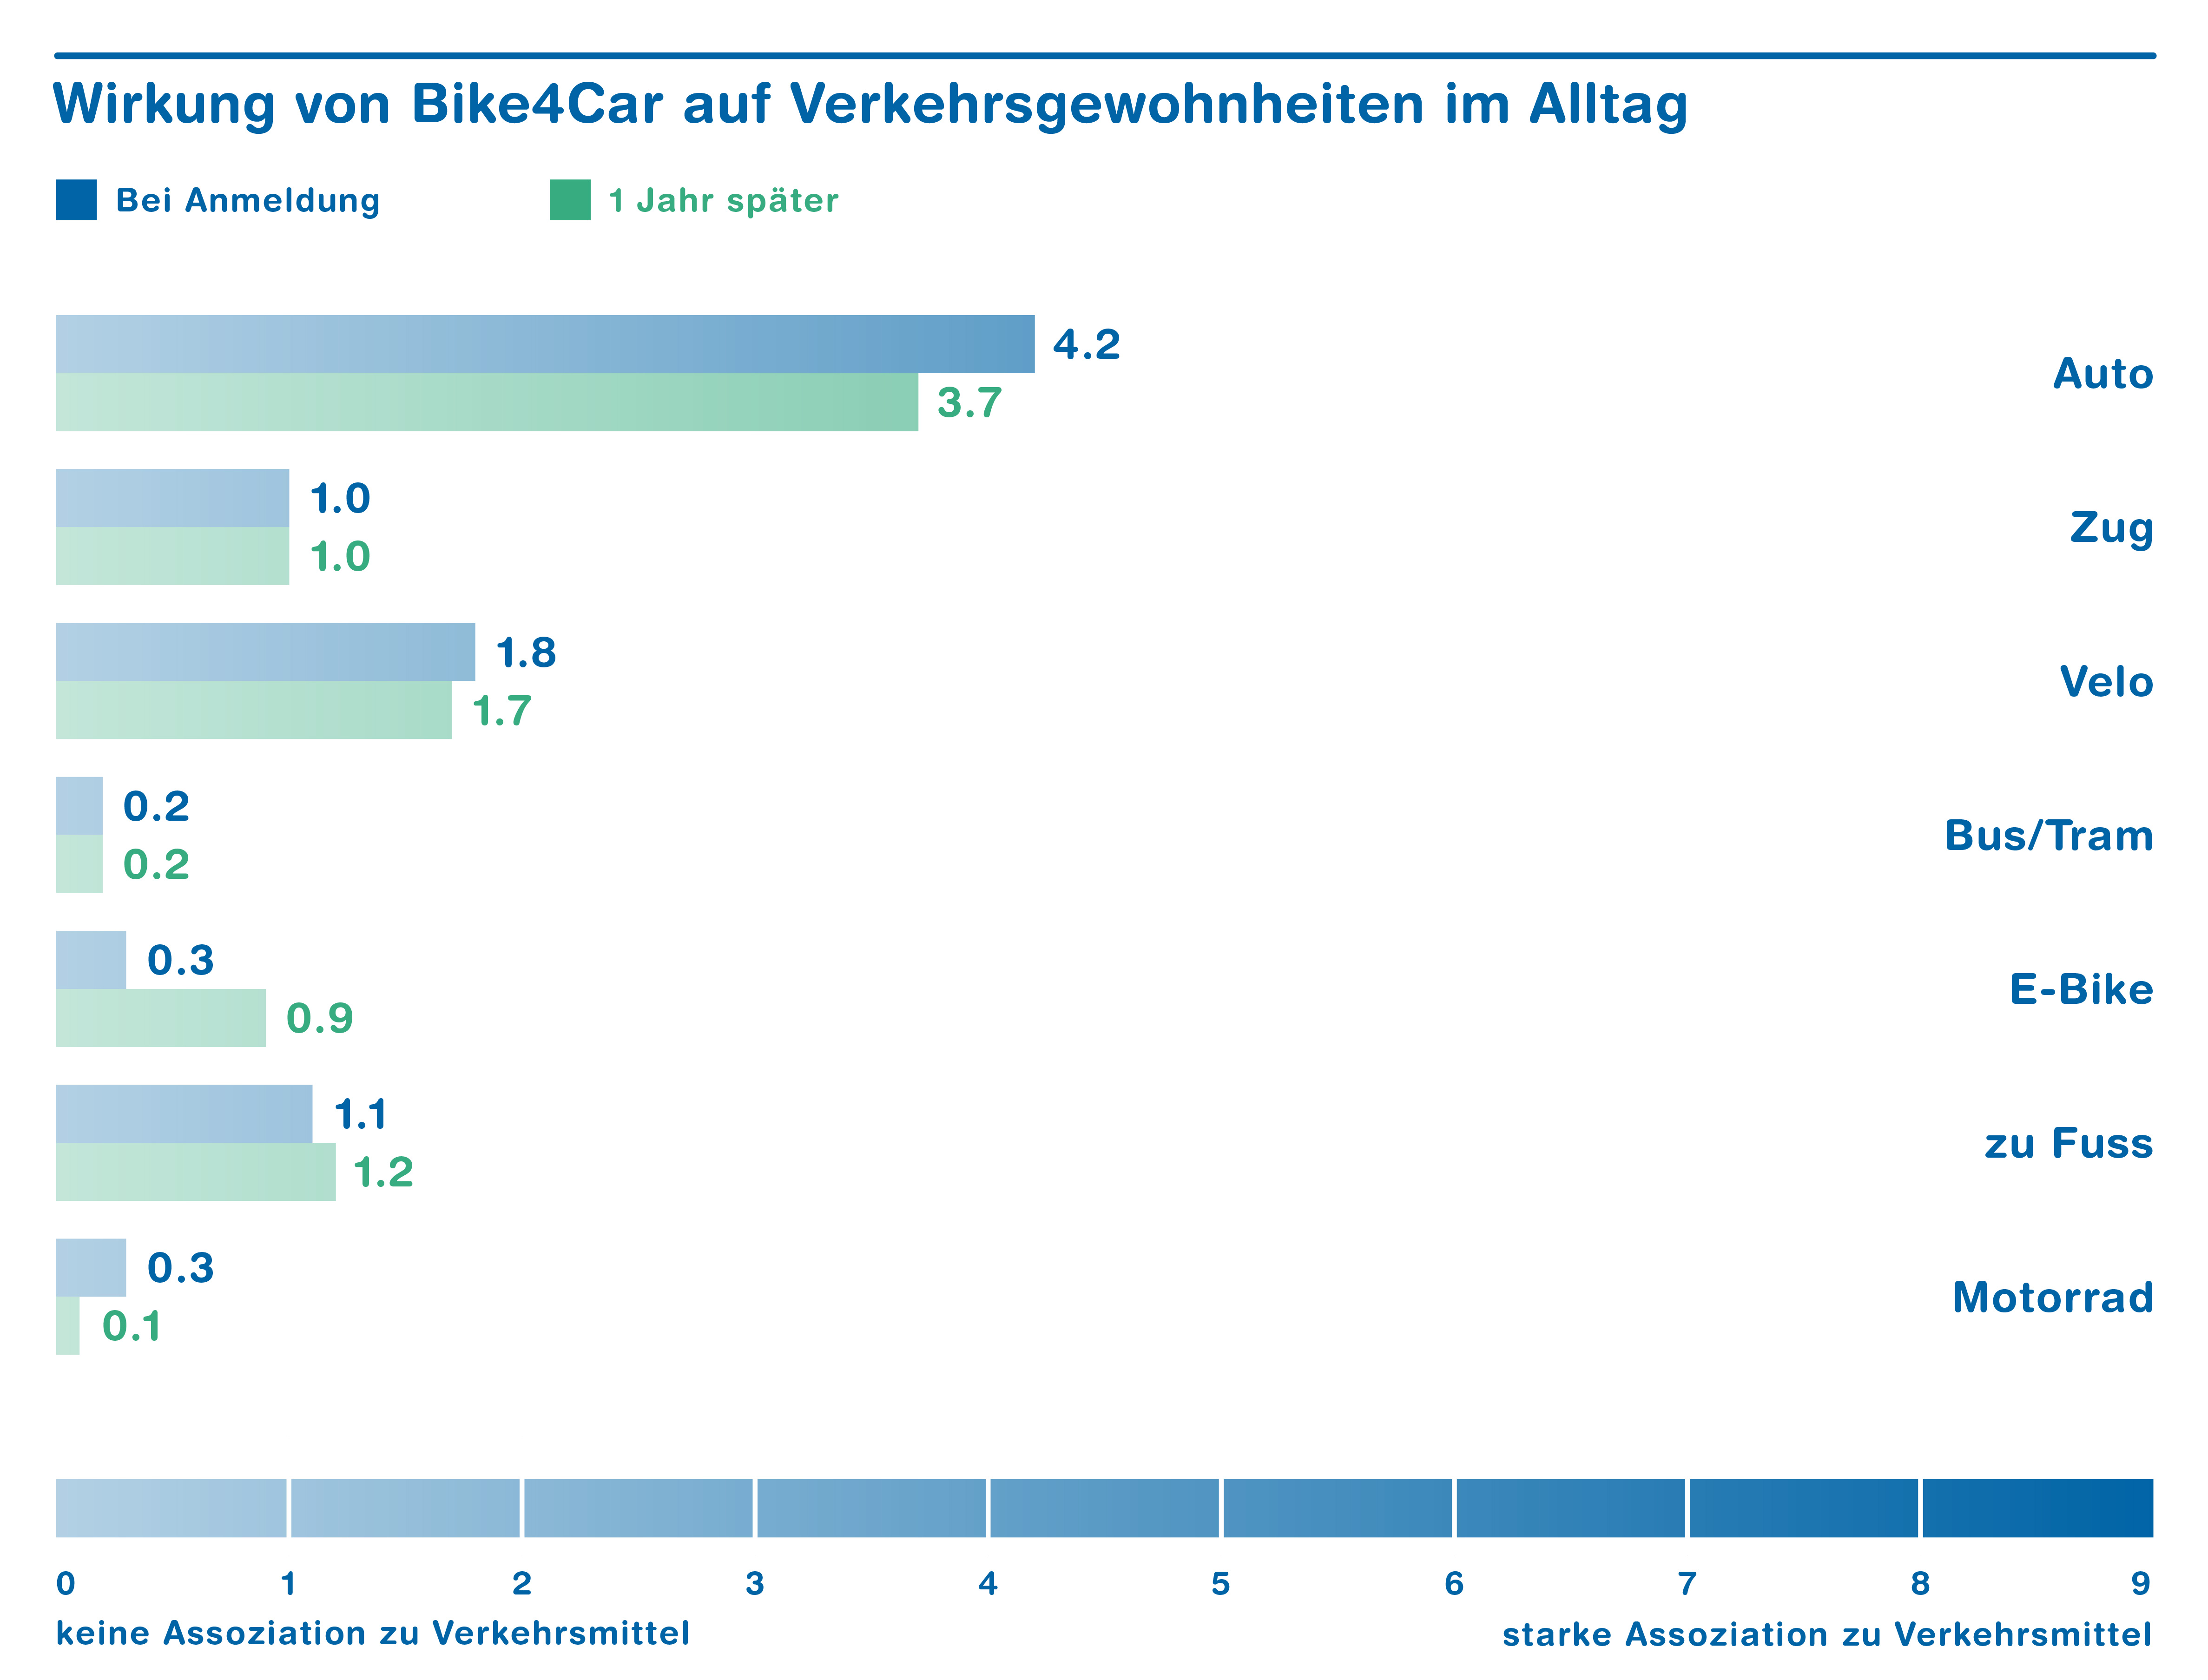 Grafik zeigt: Nach einem Jahr haben sich die Verkehrsgewohnheiten bei den Autofahrer geändert. Autofahrer haben weniger ihr Auto benutzt.